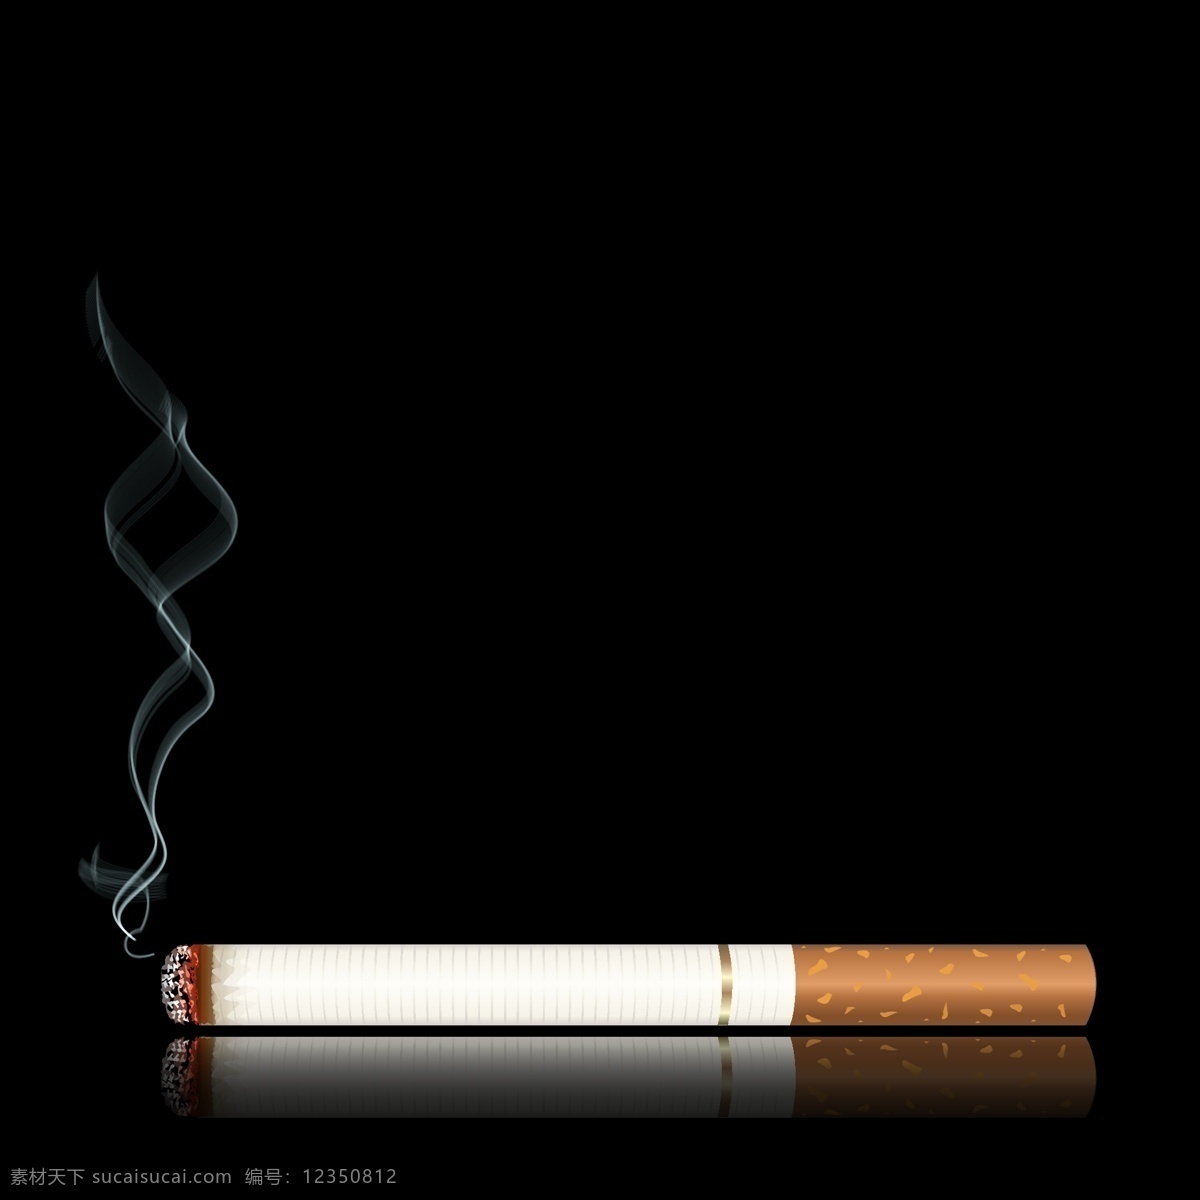 支 燃烧 烟草 矢量图 一支烟 燃烧的烟 禁止吸烟 请勿吸烟 吸烟有害健康 吸烟广告 请勿吸烟海报 no smoking